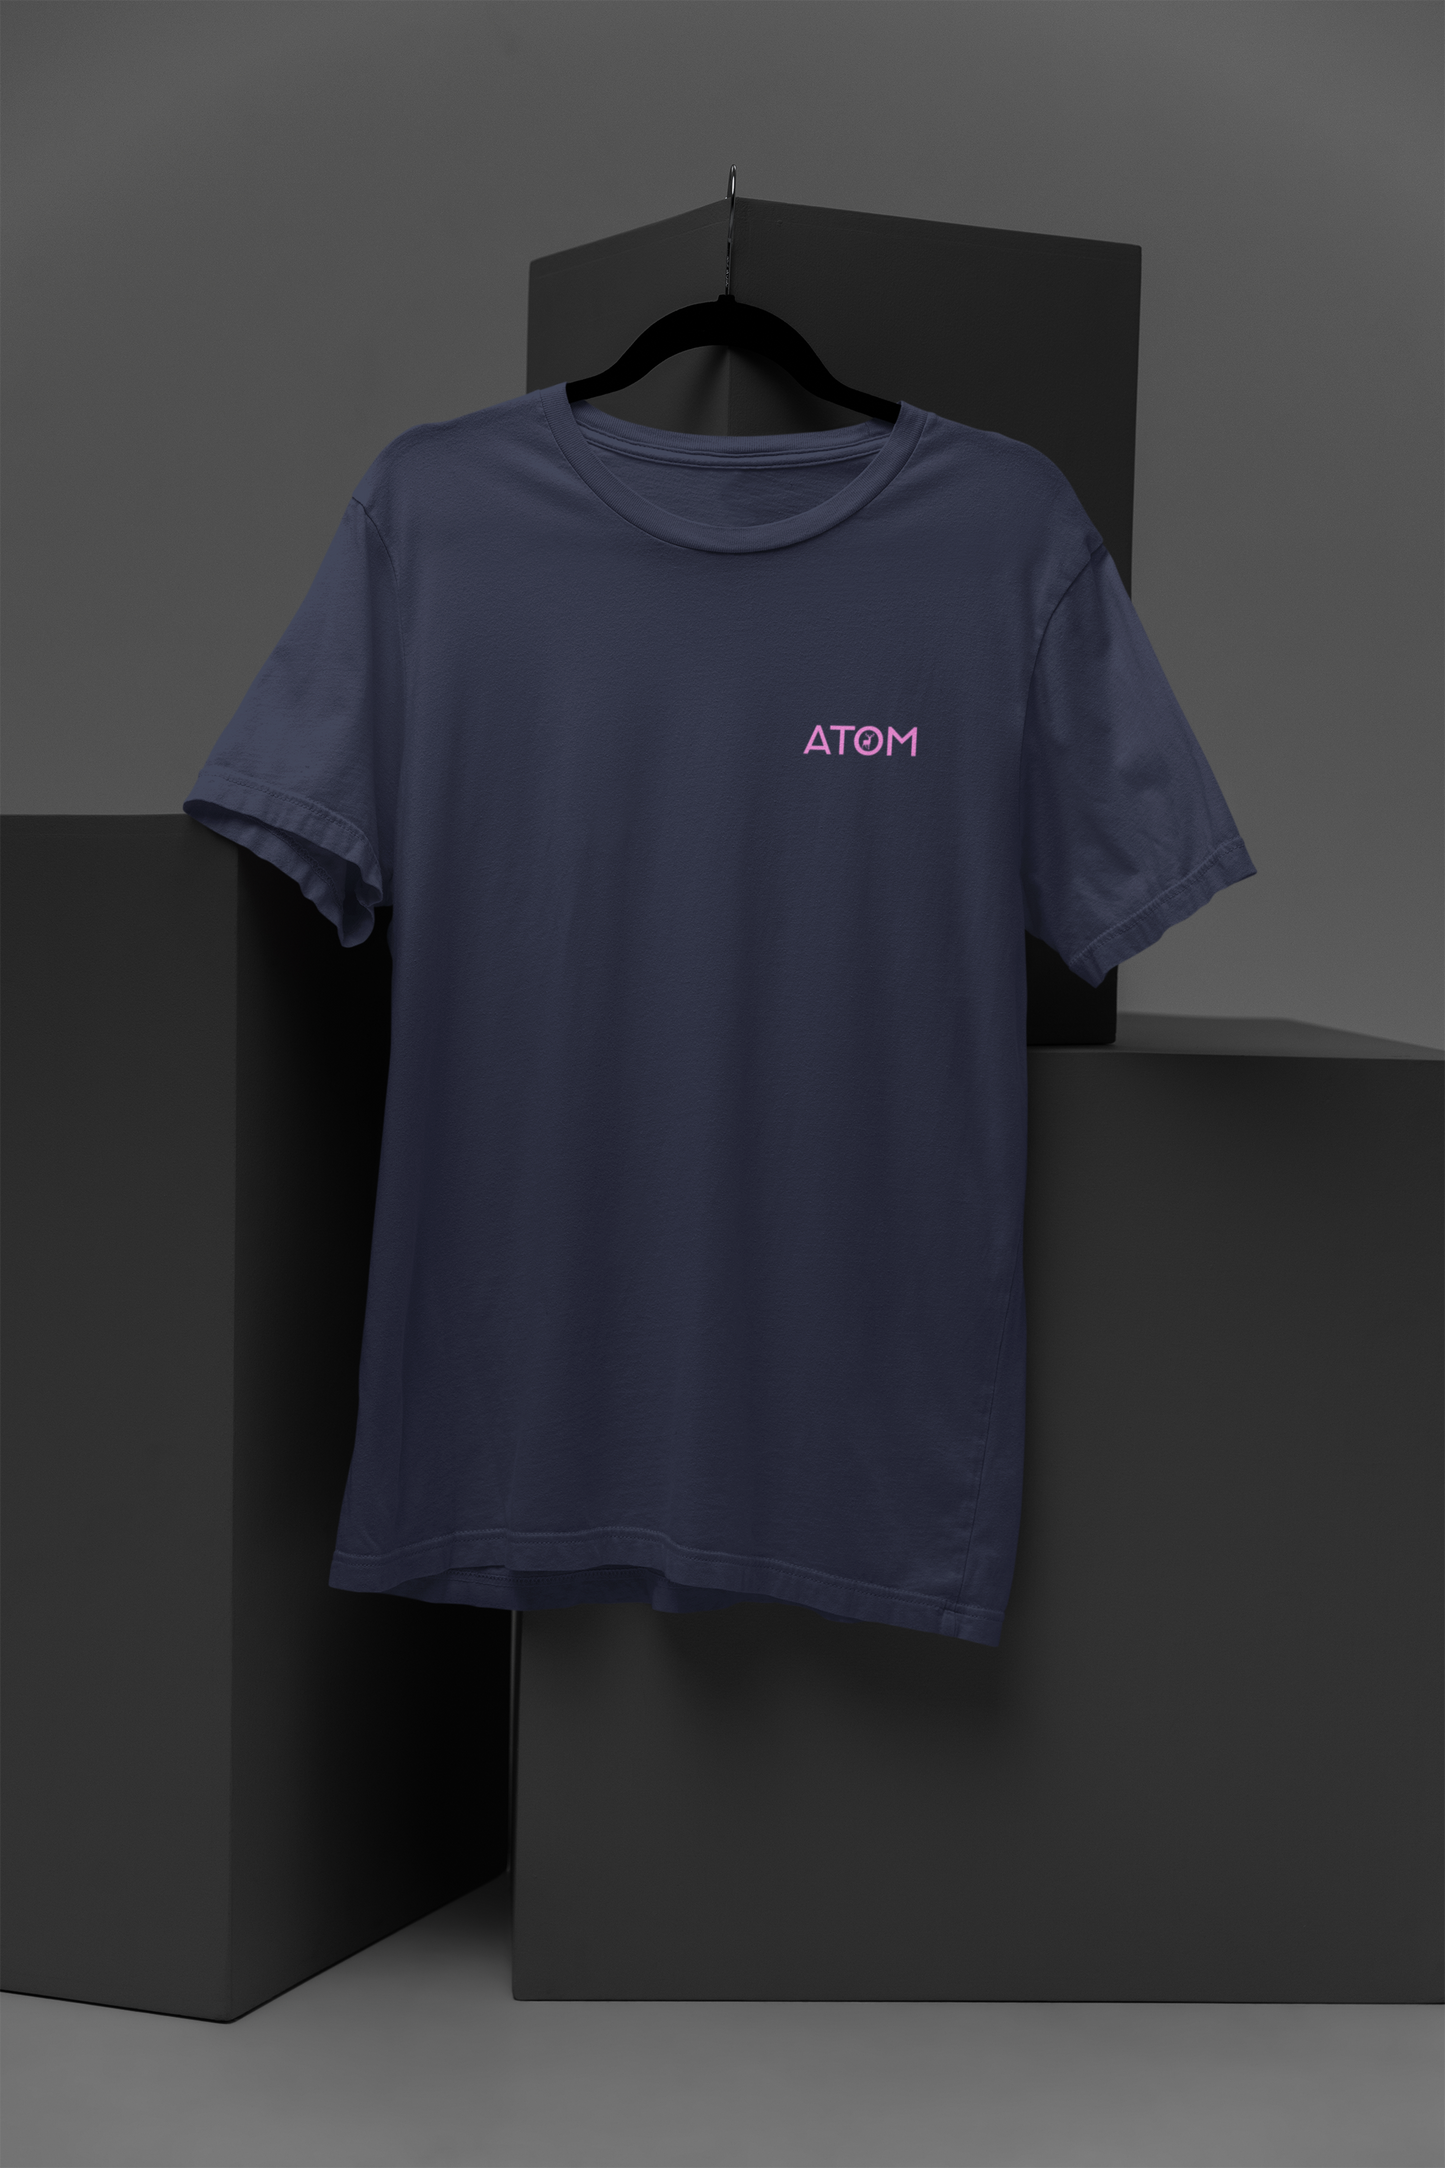 ATOM Logo Basic Navy Blue T-Shirt For Women